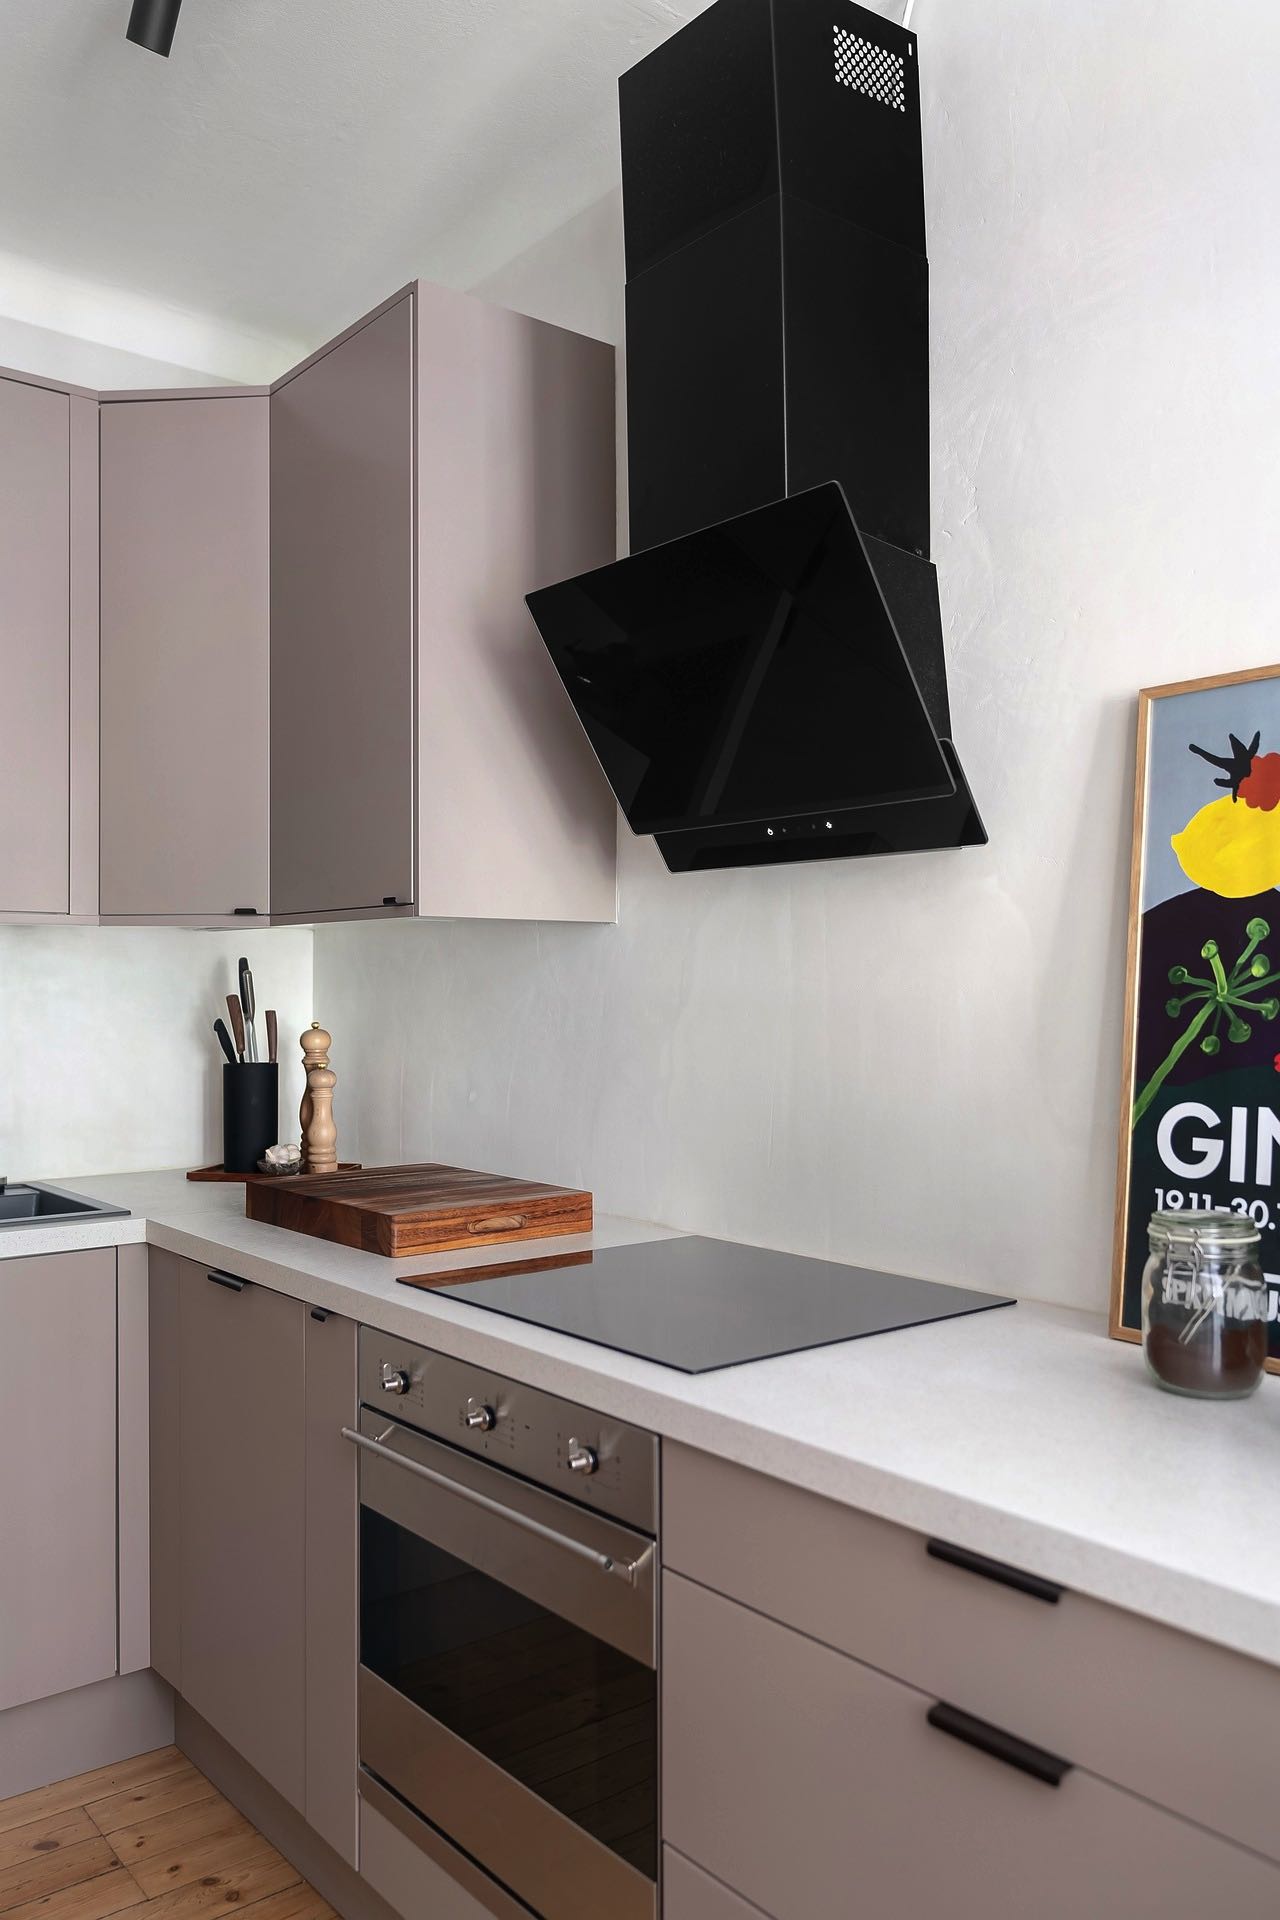 Ein moderner Touch in der Küche: Die elegante Kombination aus zarten Rosatönen und markantem Schwarz bei dieser Umlufthaube schafft einen ansprechenden Kontrast und unterstreicht das Designbewusstsein der Hausbesitzer.